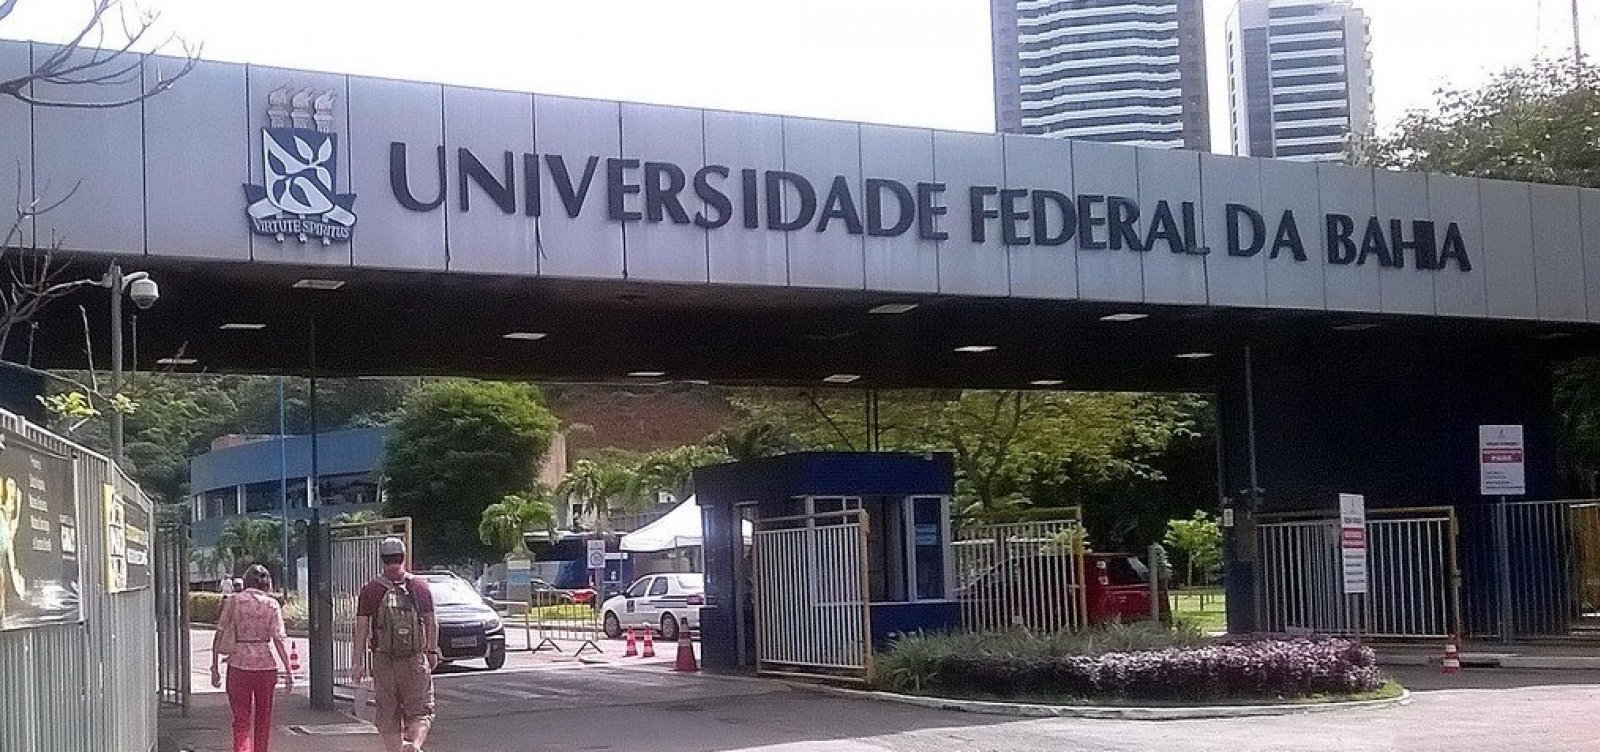 Ufba é 20ª melhor universidade do Brasil, aponta MEC 